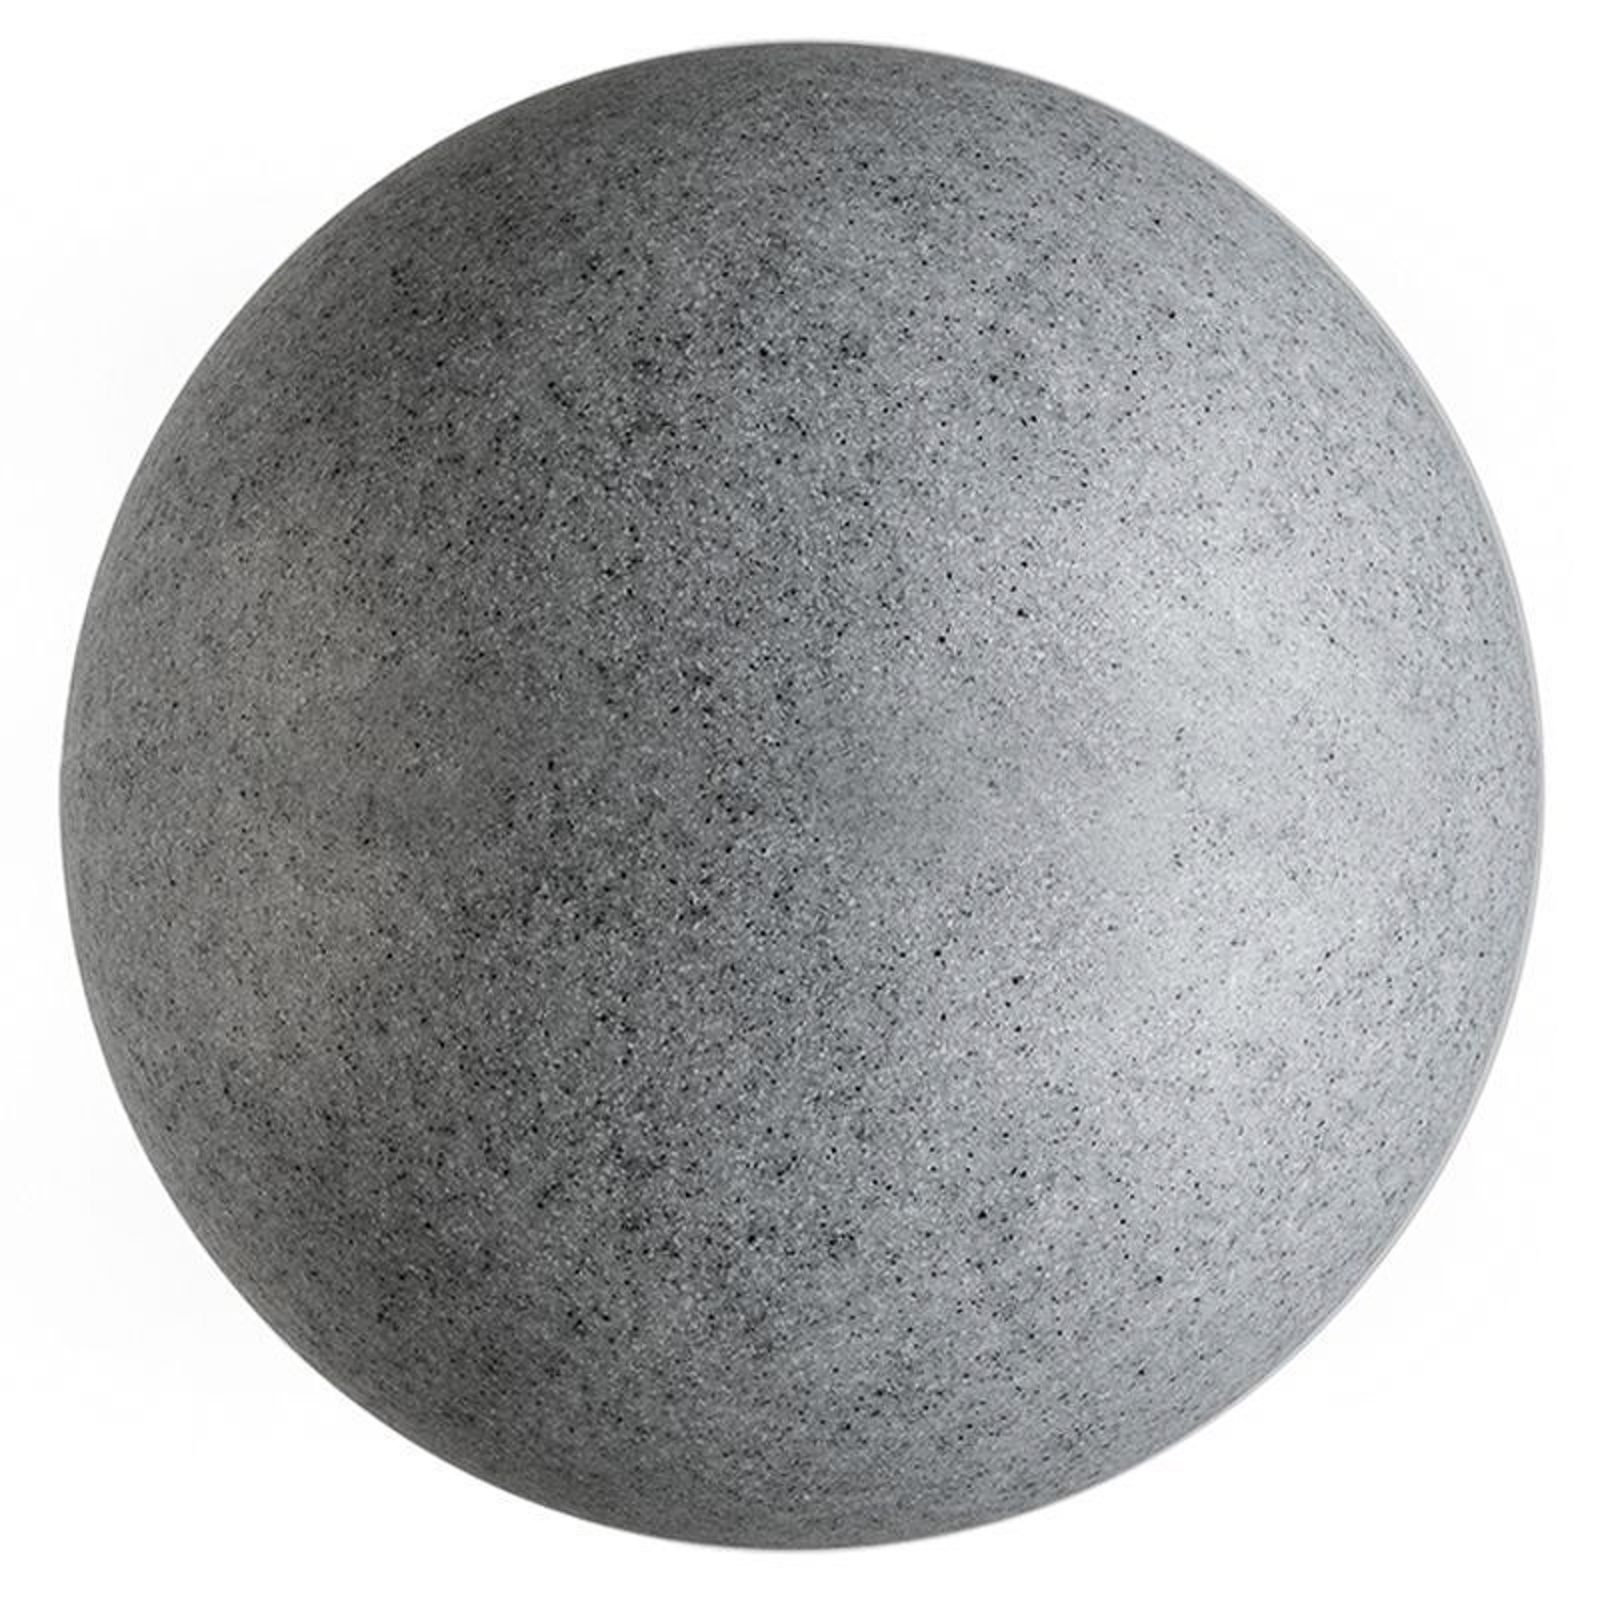 Lichtbol met grondspies, graniet, Ø 77cm